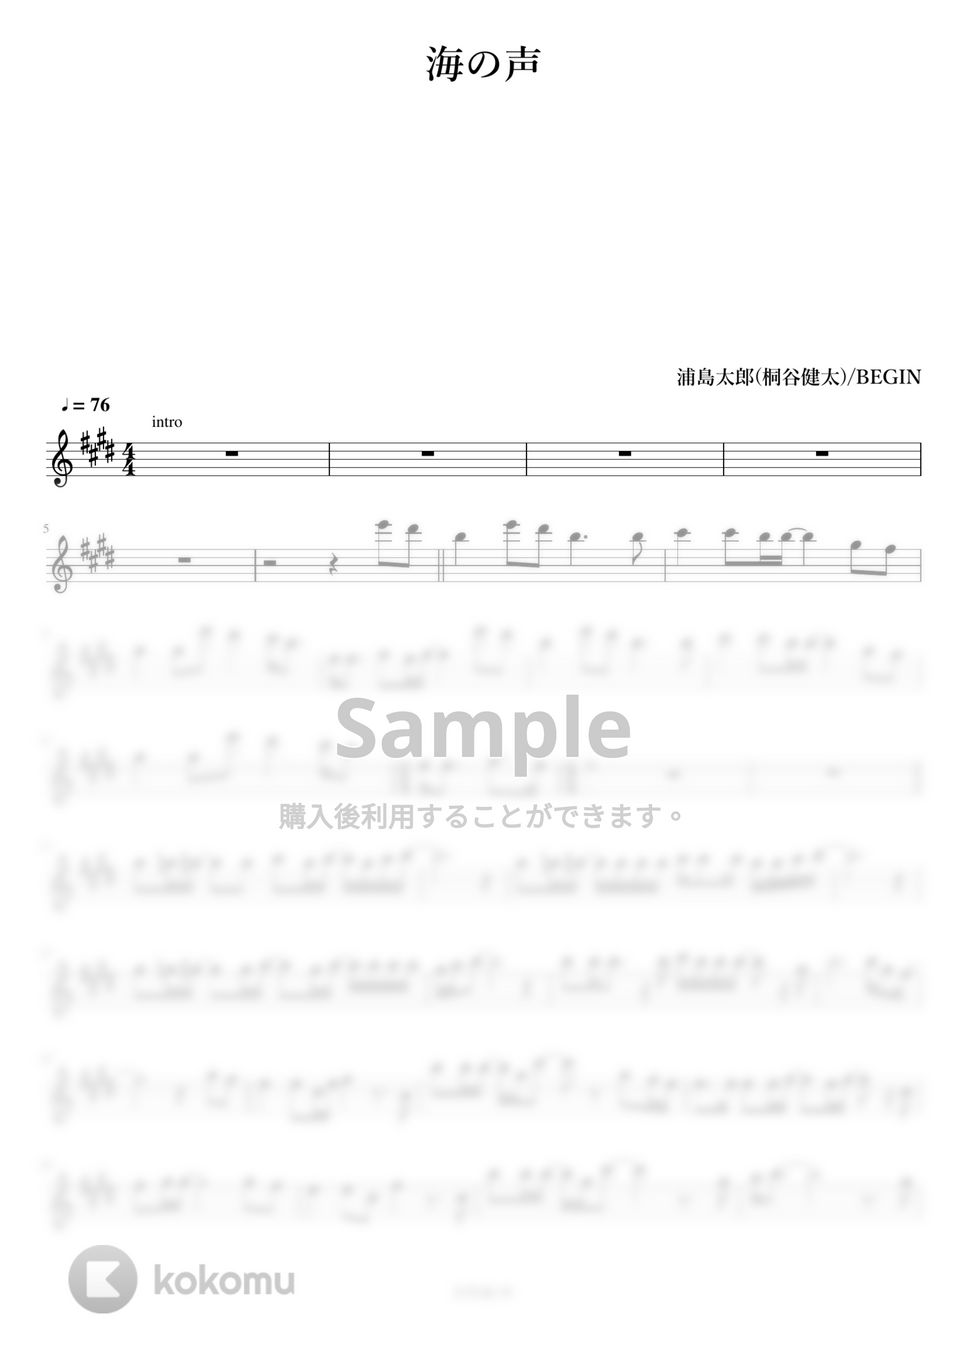 浦島 太郎（桐谷 健太） - 海の声 (フルート用メロディー譜) by もりたあいか